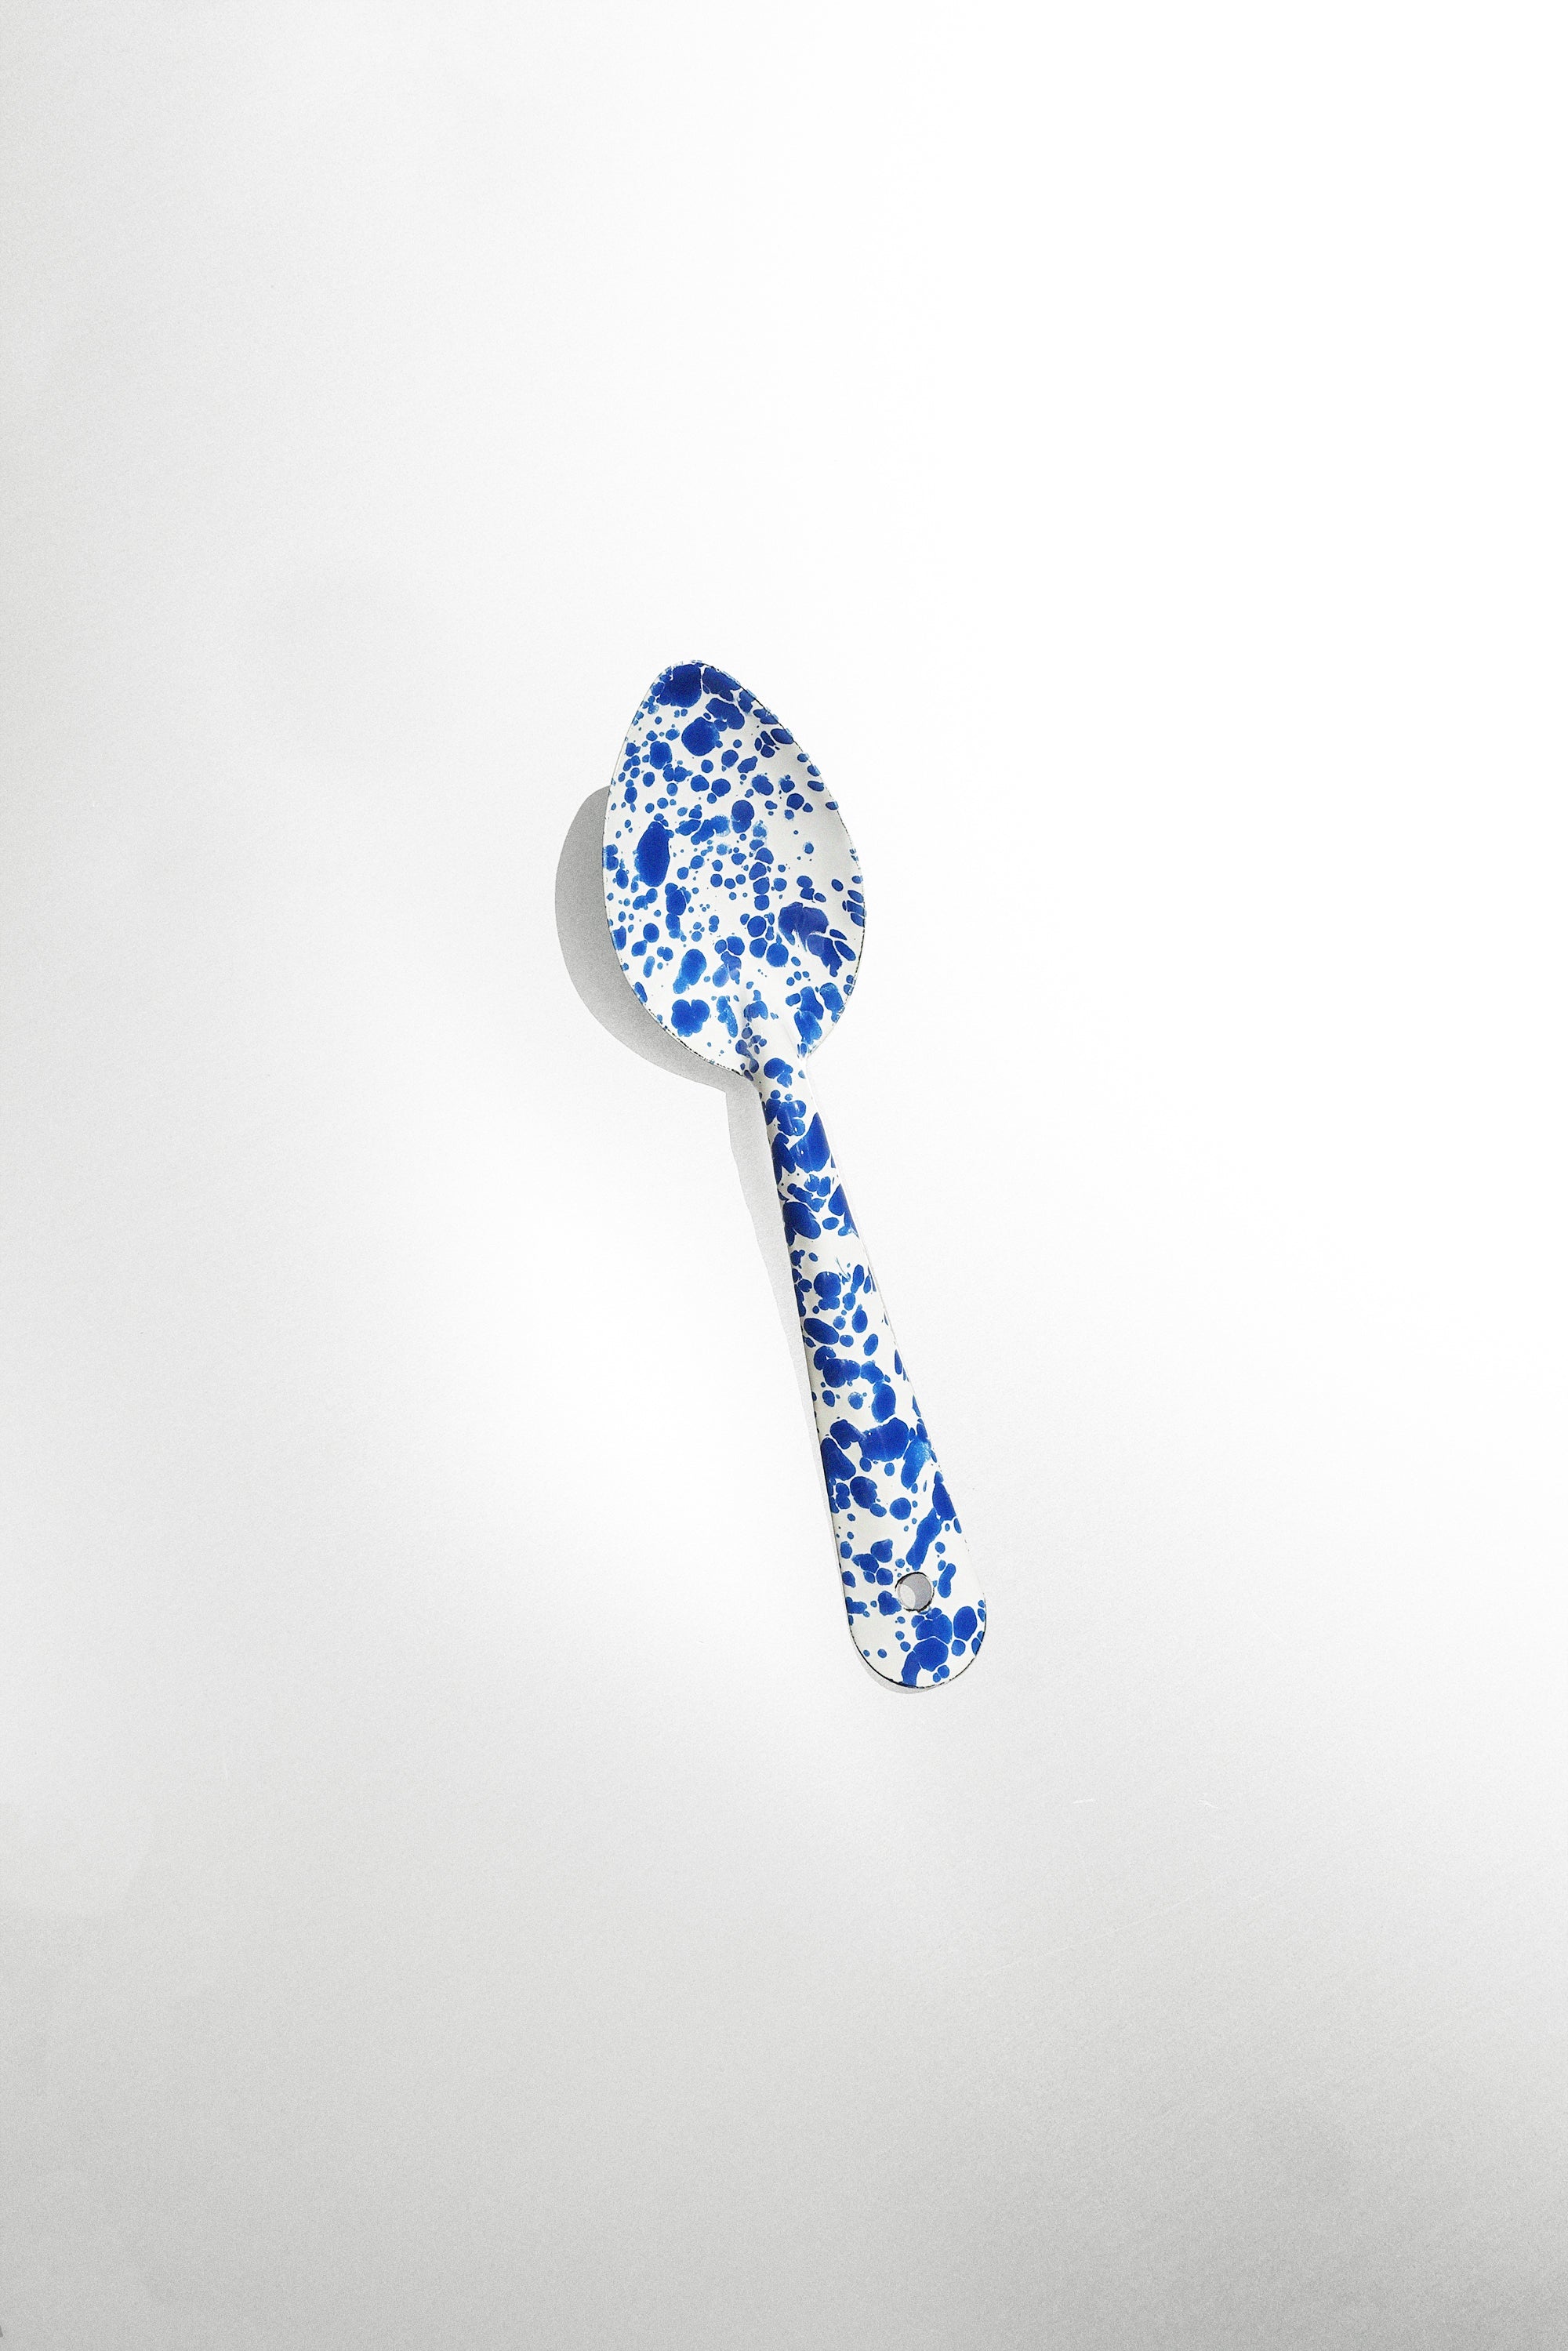 Medium Spoon in Blue Splatter